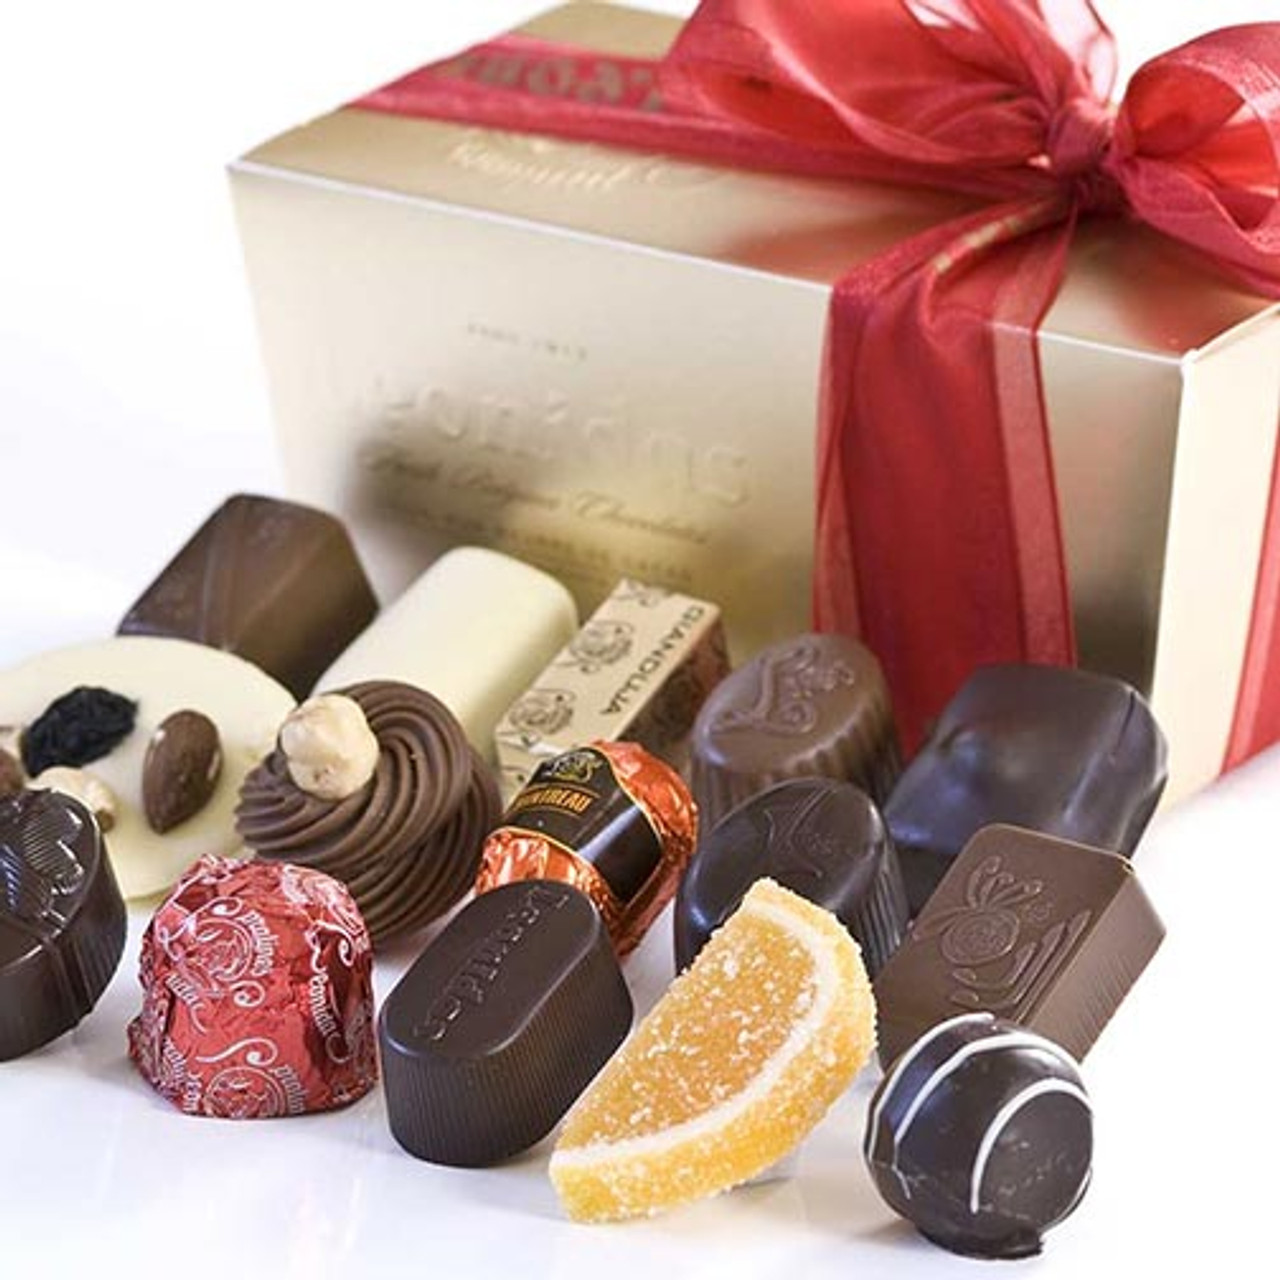 Leonidas Belgian Chocolate Assortment - 1 lb. Mixed in Ballotin Gift Box